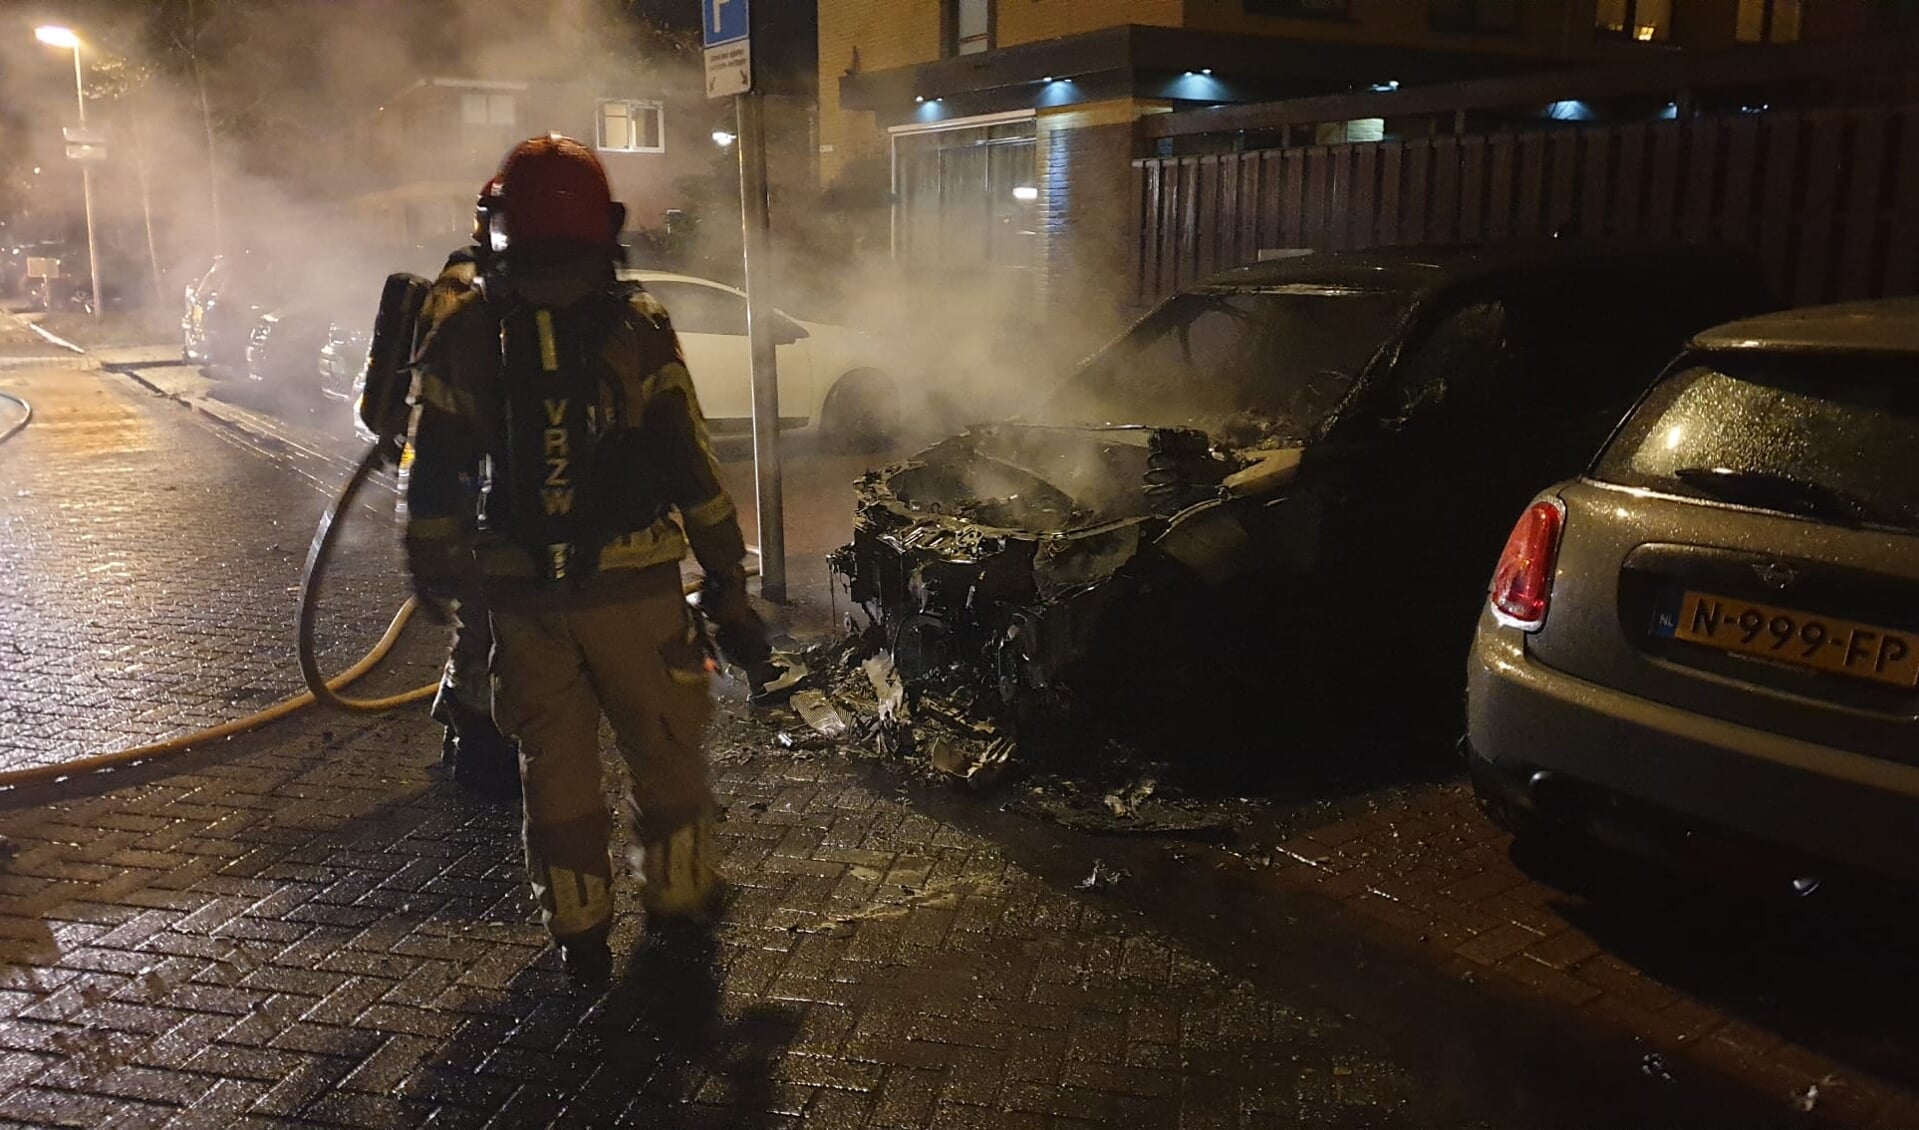 De brandweer kon de auto niet meer redden. Het voertuig ernaast liep fikse schade op.